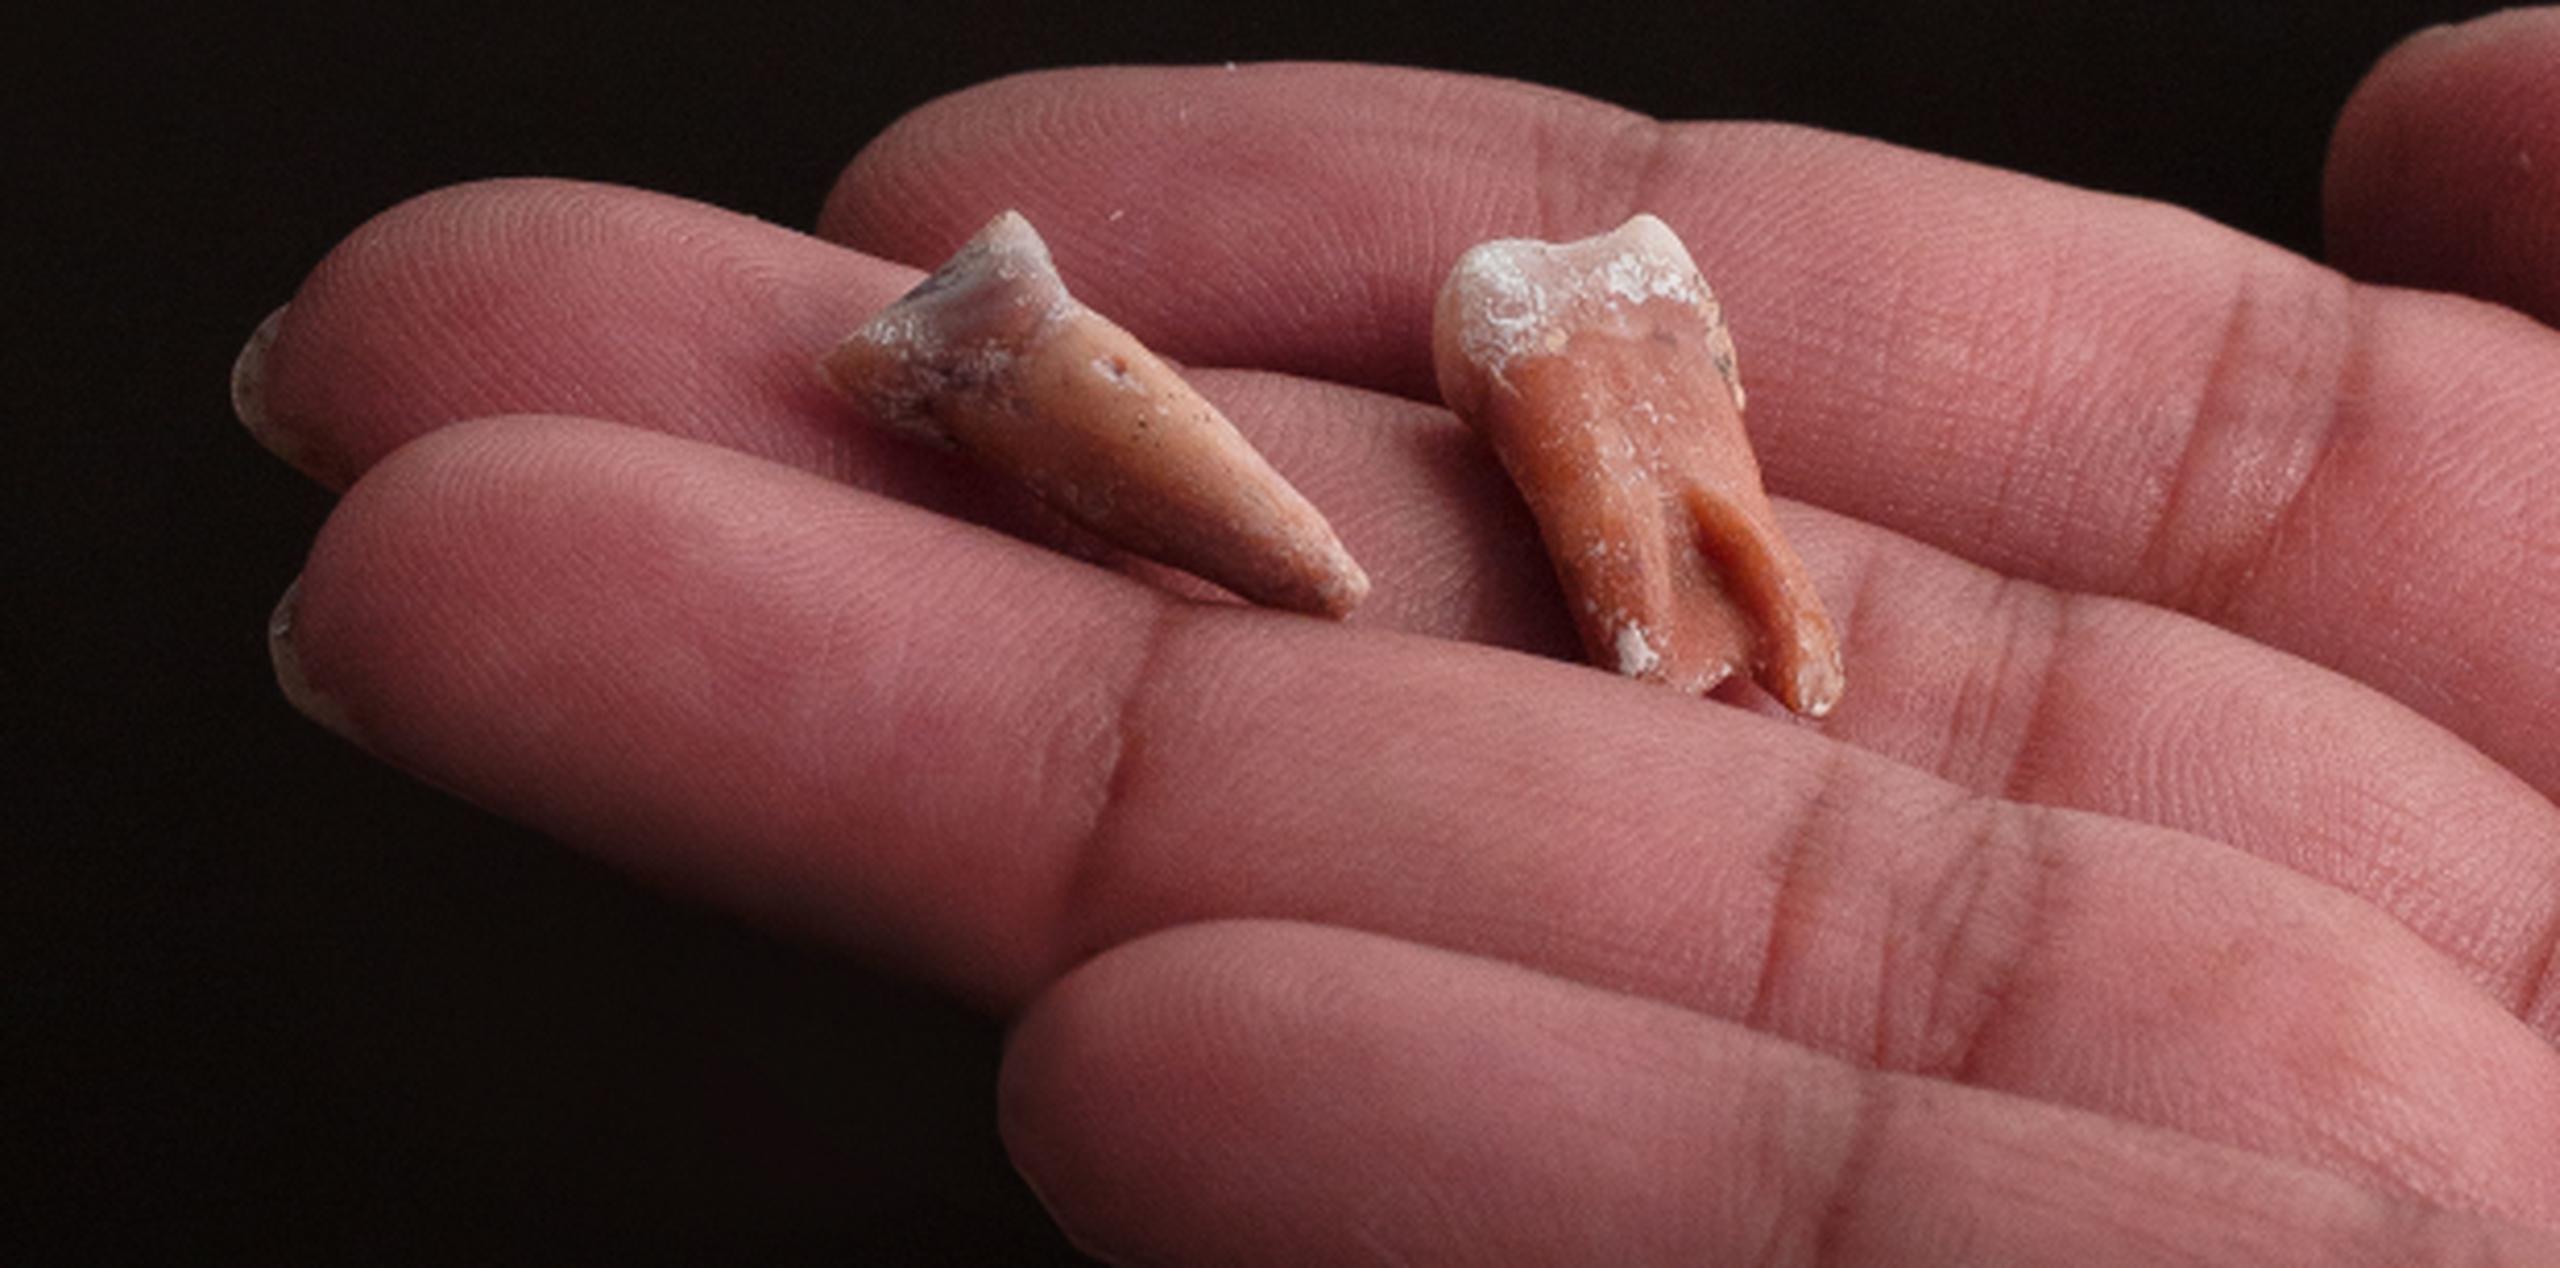 Dos de los dientes de "hobbit" hallados entre los fósiles del antiguo homínido ya extinto. (Kinez Riza via AP)